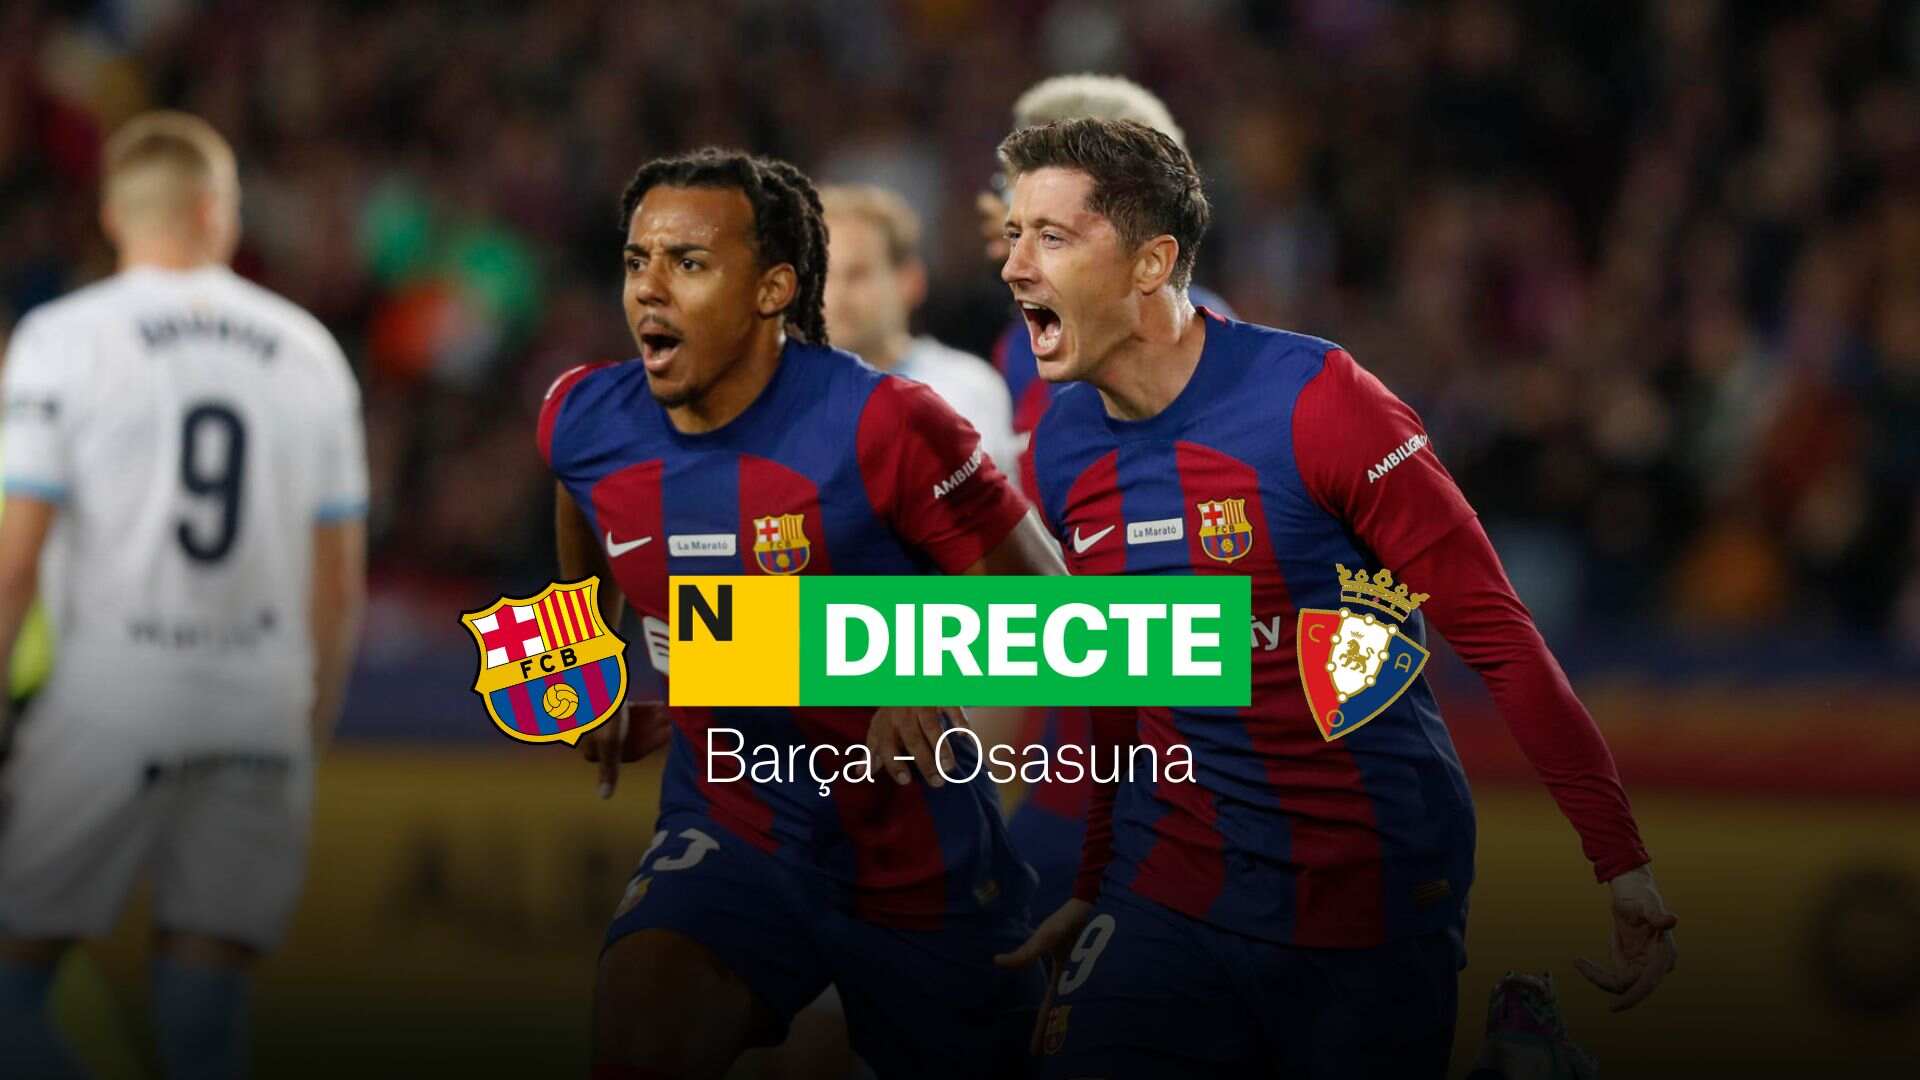 Barcelona - Osasuna de la Supercopa de España, DIRECTO | Resultado, resumen y goles